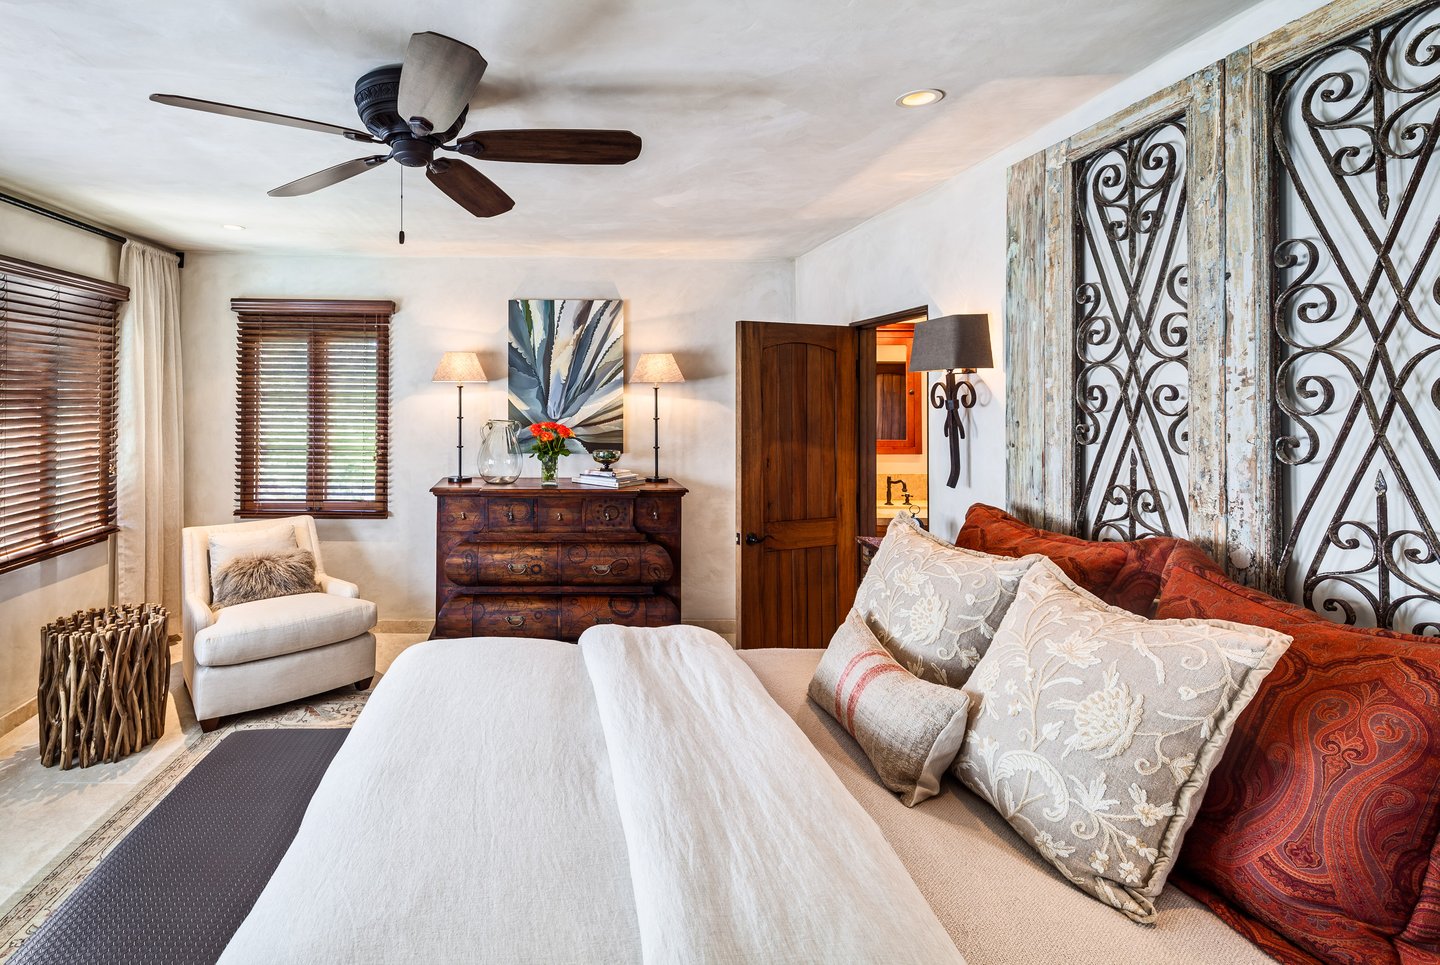 Bedroom interior arrangement with natural wood color scheme. 